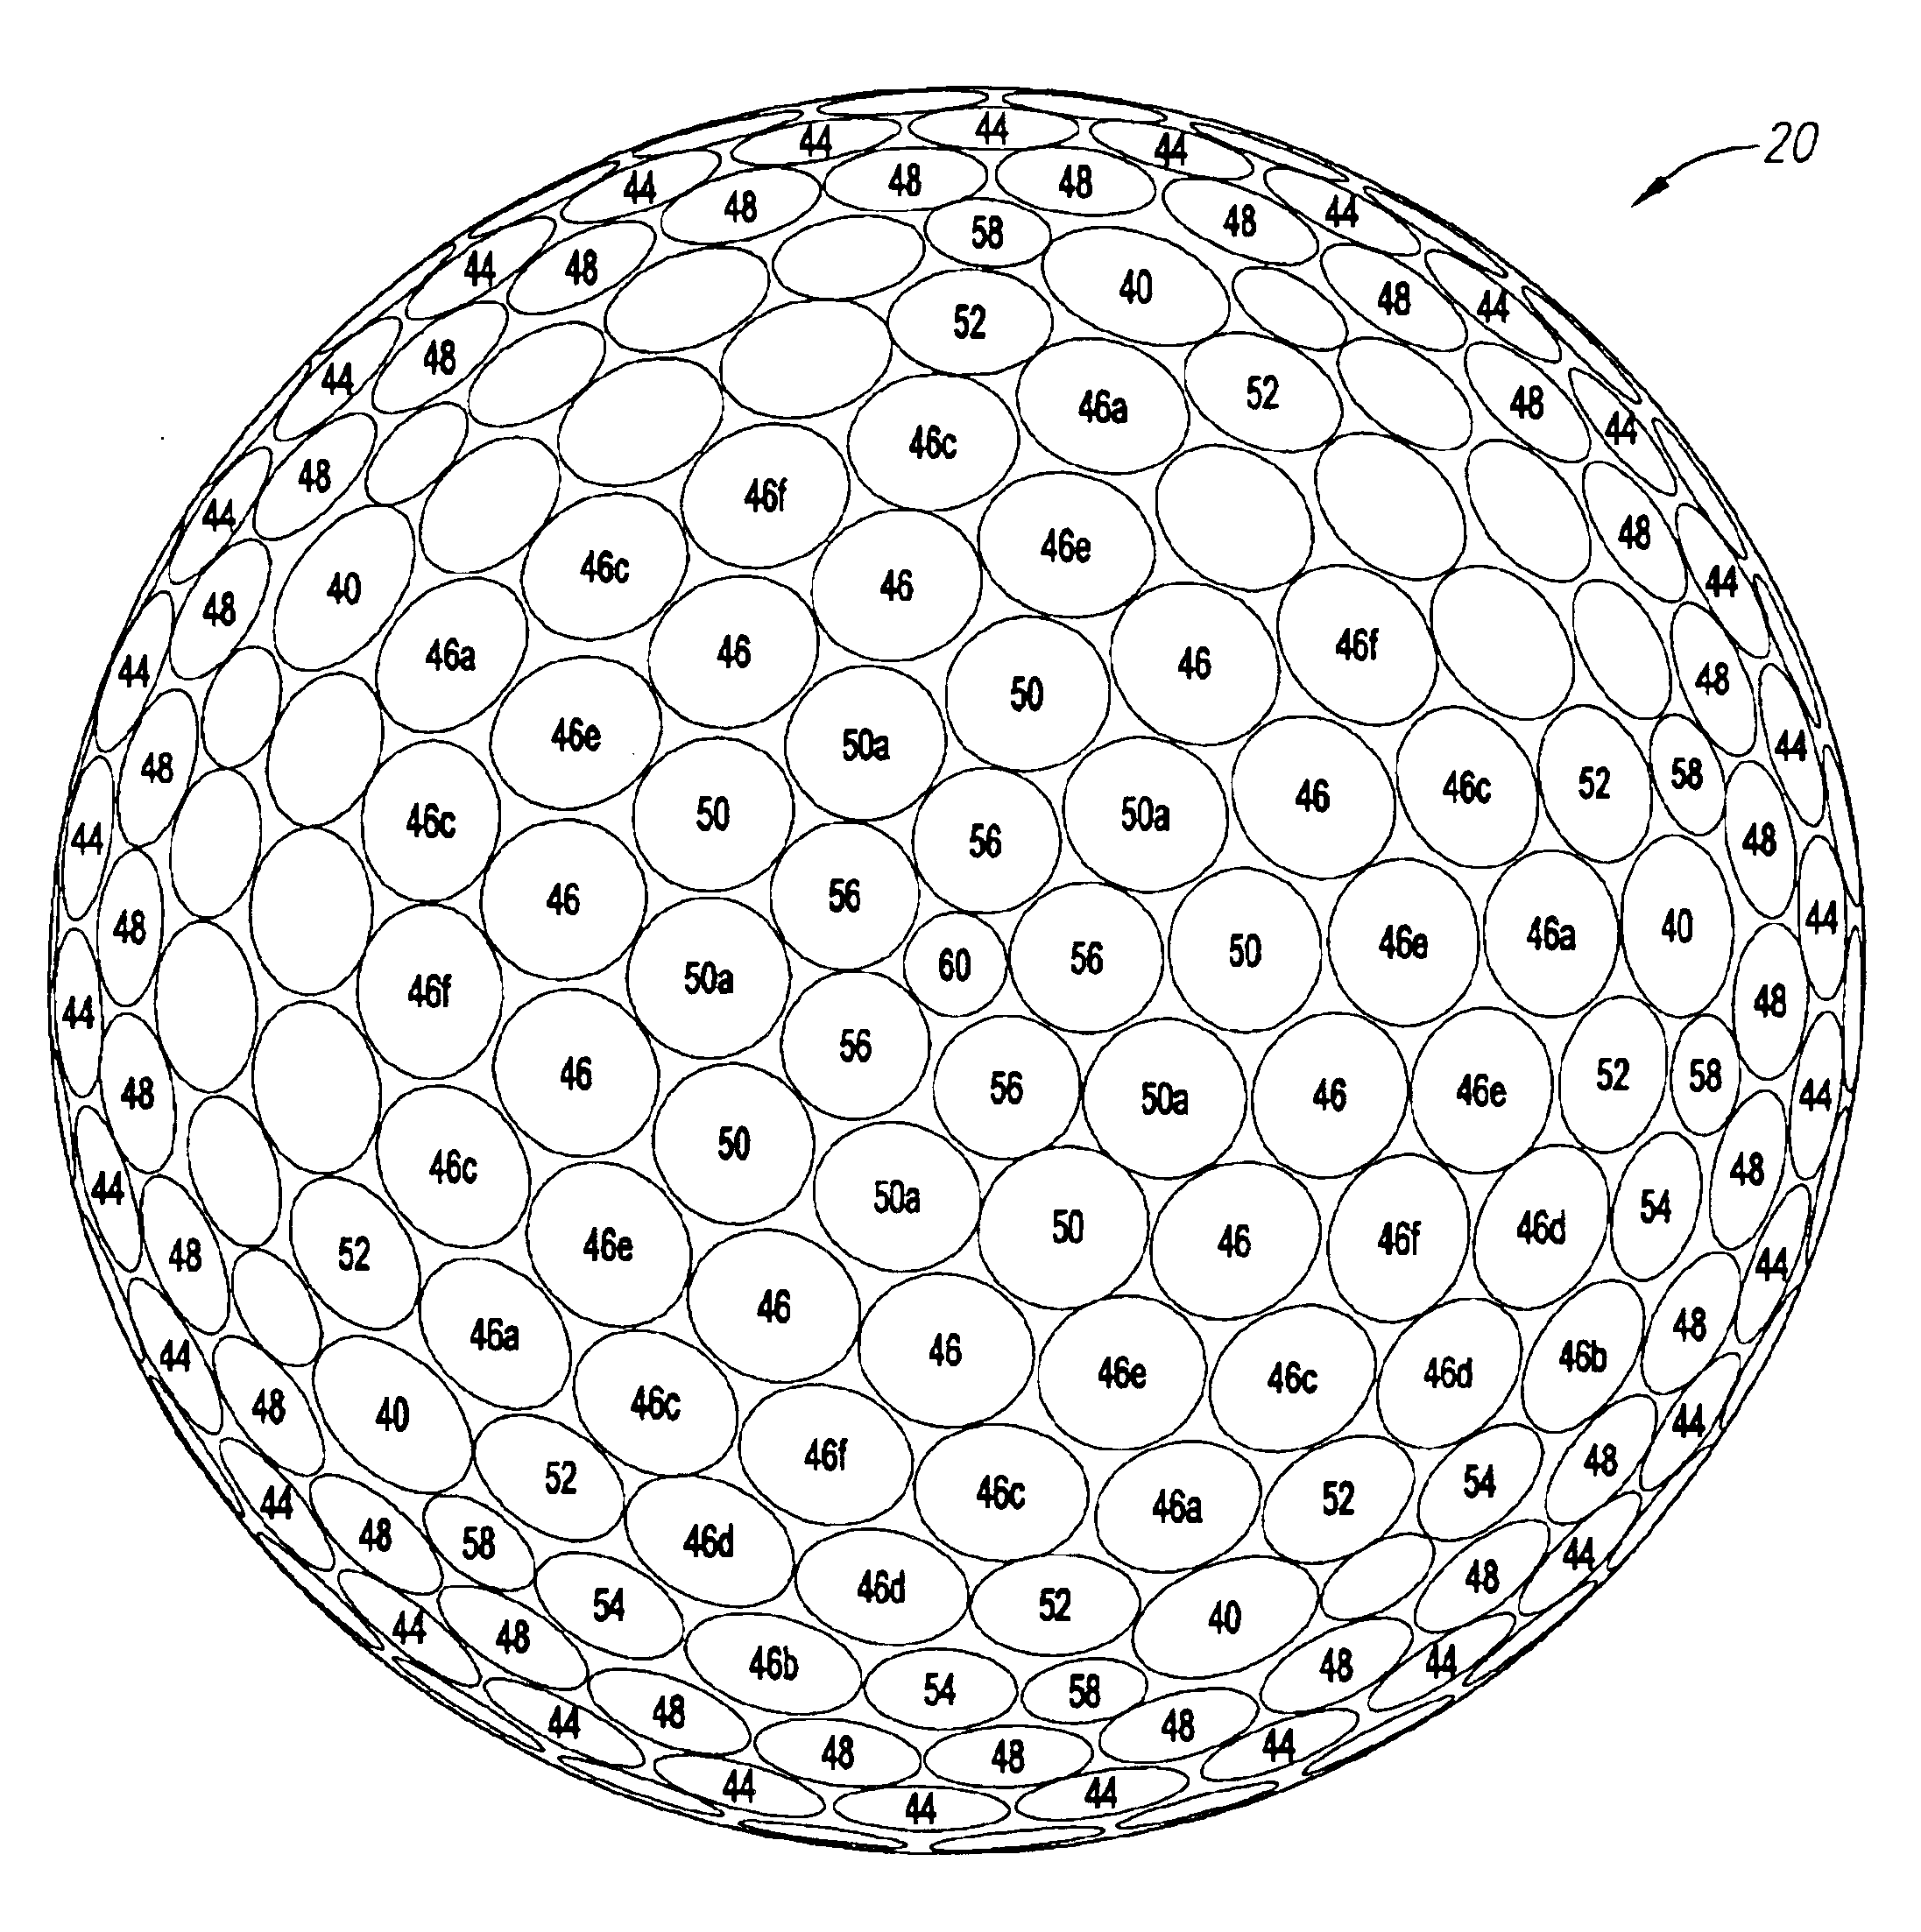 Aerodynamic pattern for a golf ball